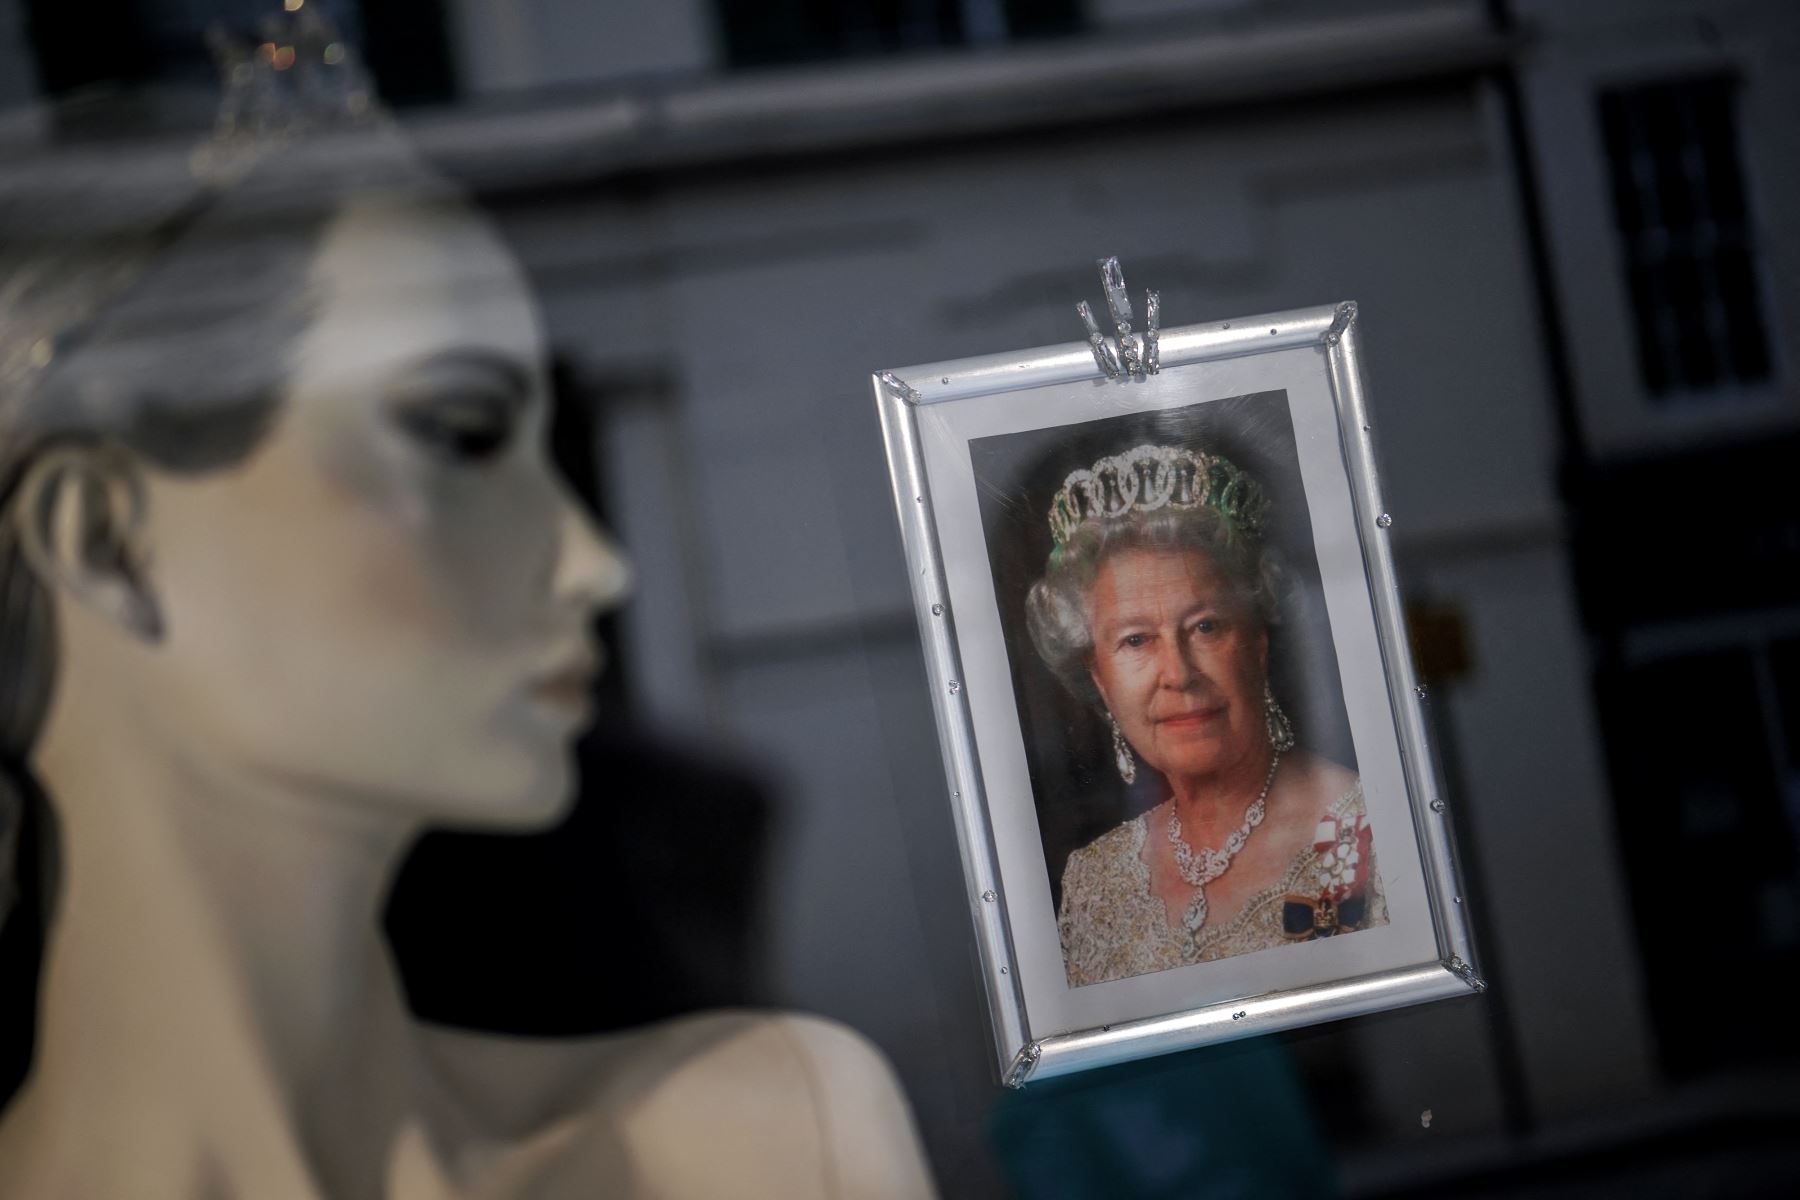 "Durante 70 años, la reina ha sido el símbolo definitivo de lo que significa ser británico. Su liderazgo firme y servicio inquebrantable en buenos y malos momentos ha sido una inspiración para muchos", señaló en el comunicado la ministra de Cultura del Reino Unido, Nadine Dorries. Foto: AFP